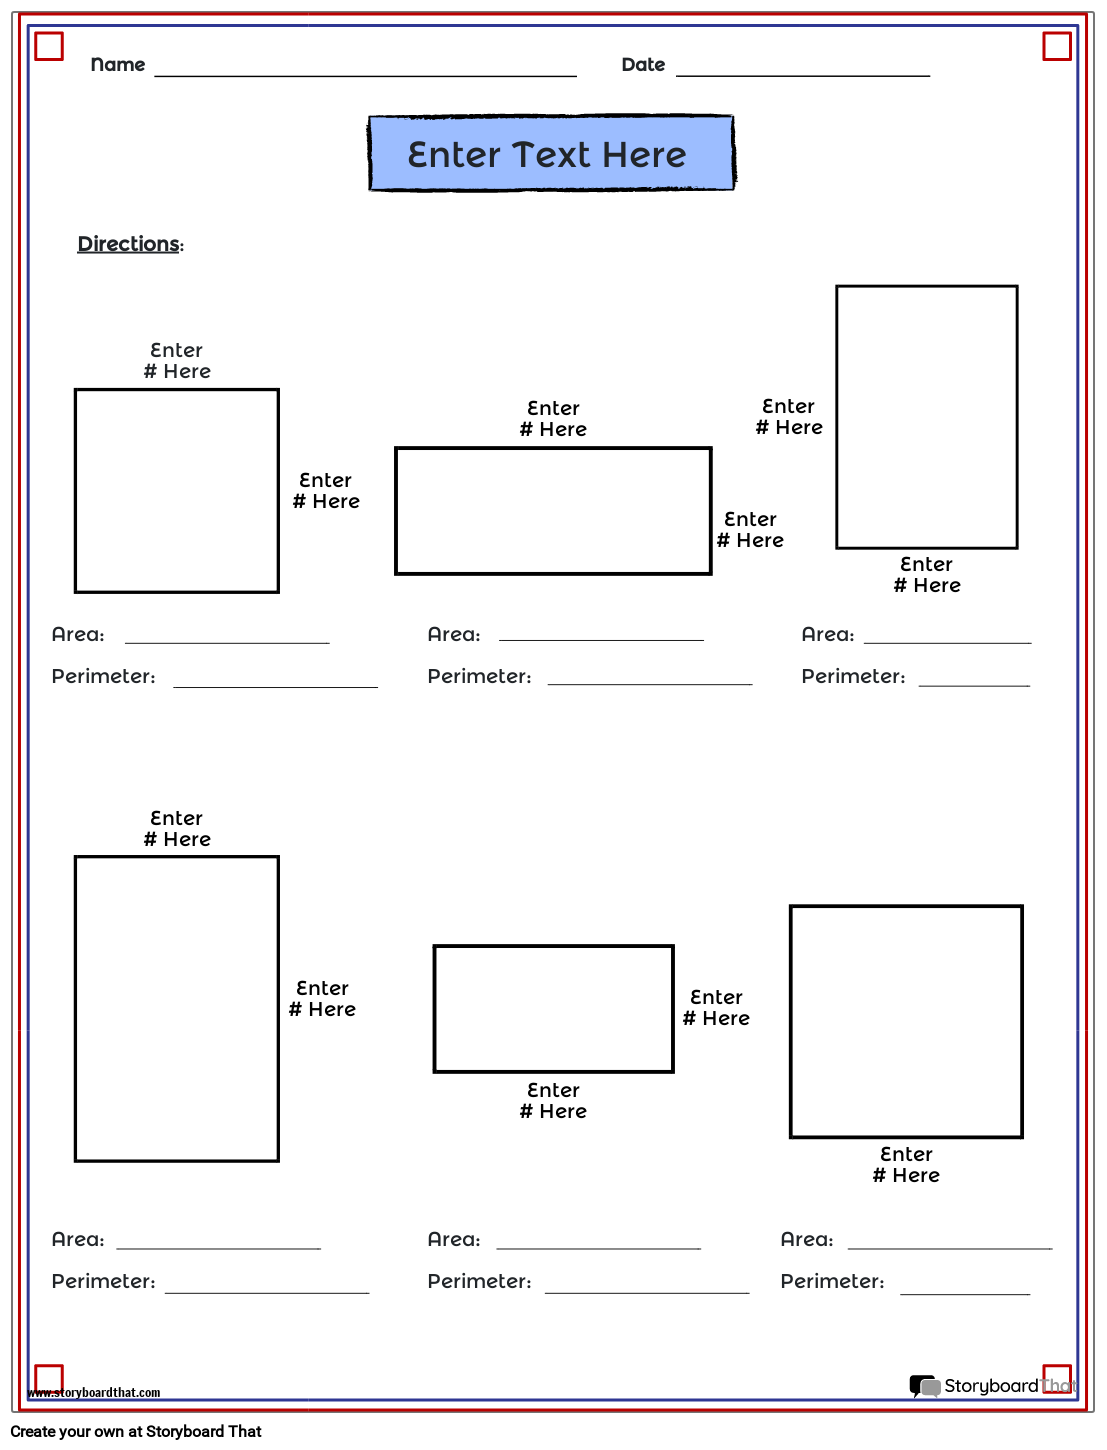 area-perimeter-worksheets-geometry-worksheets-storyboardthat